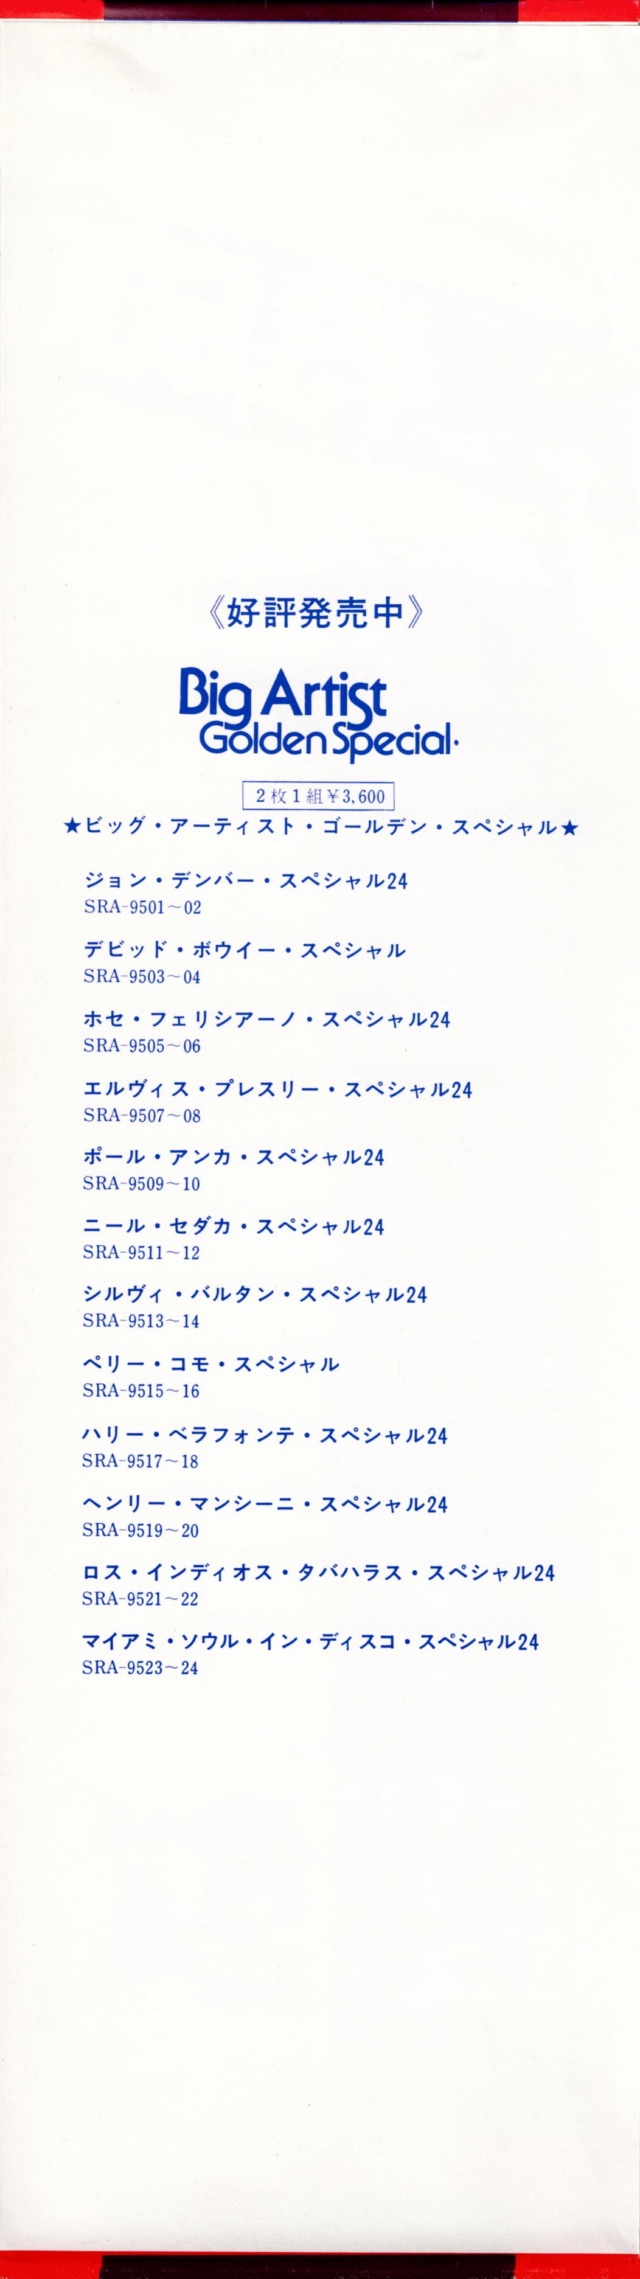 Discographie Japonaise - 4ème partie (33 T COMPILATION) - Page 15 Jpn_sr51